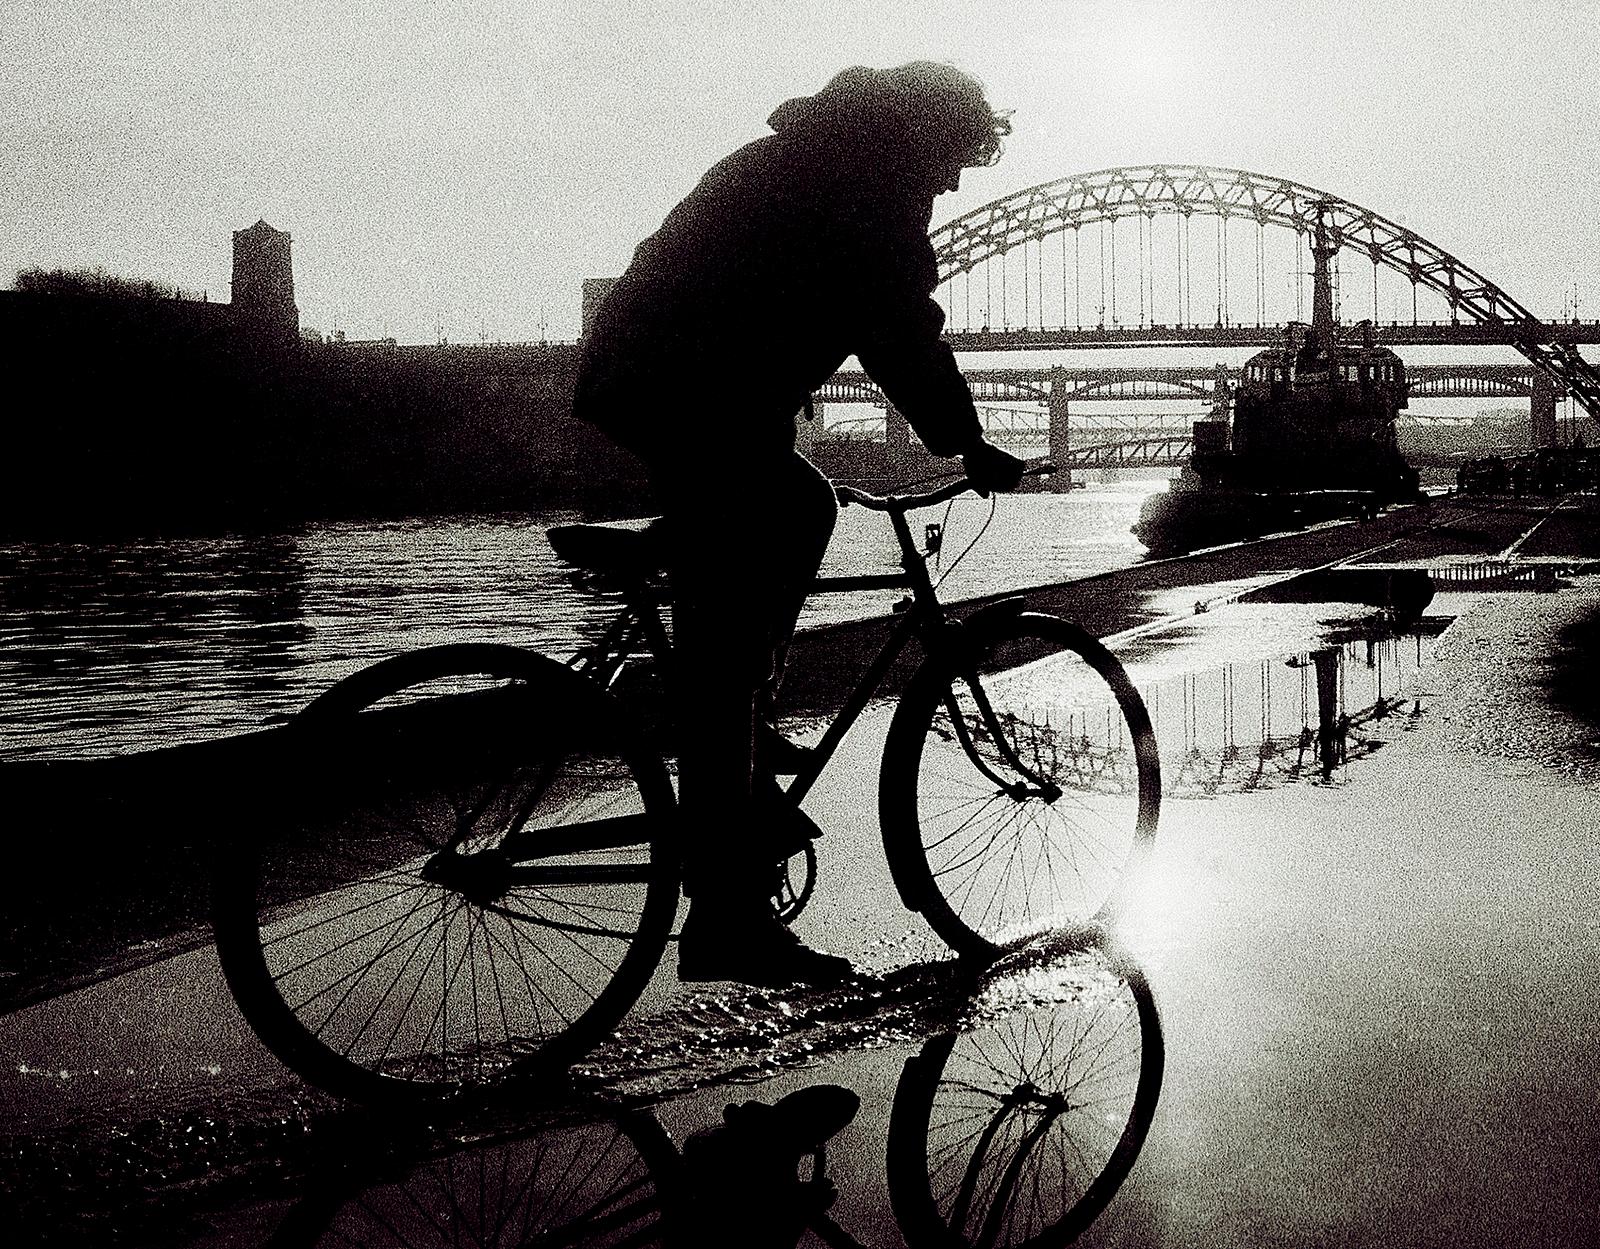 Impression d'un paysage urbain, noir et blanc, Contemporain, Photo analogique - Newcastle  - Photograph de Ian Sanderson